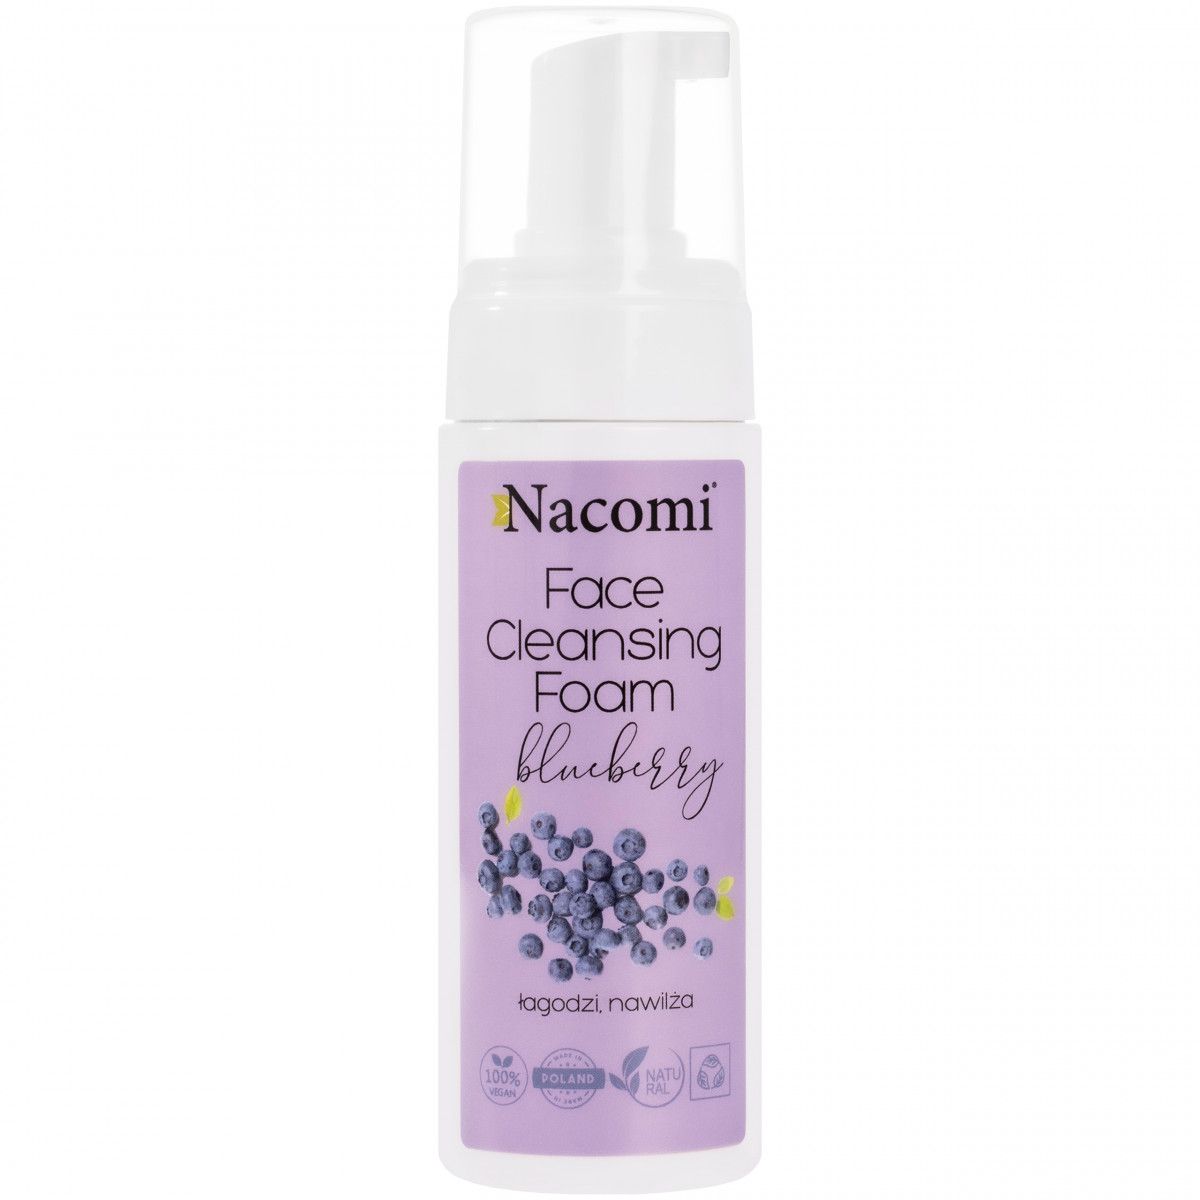 Nacomi Face Cleansing Foam Blueberry - pianka myjąca do twarzy o zapachu borówki 150ml